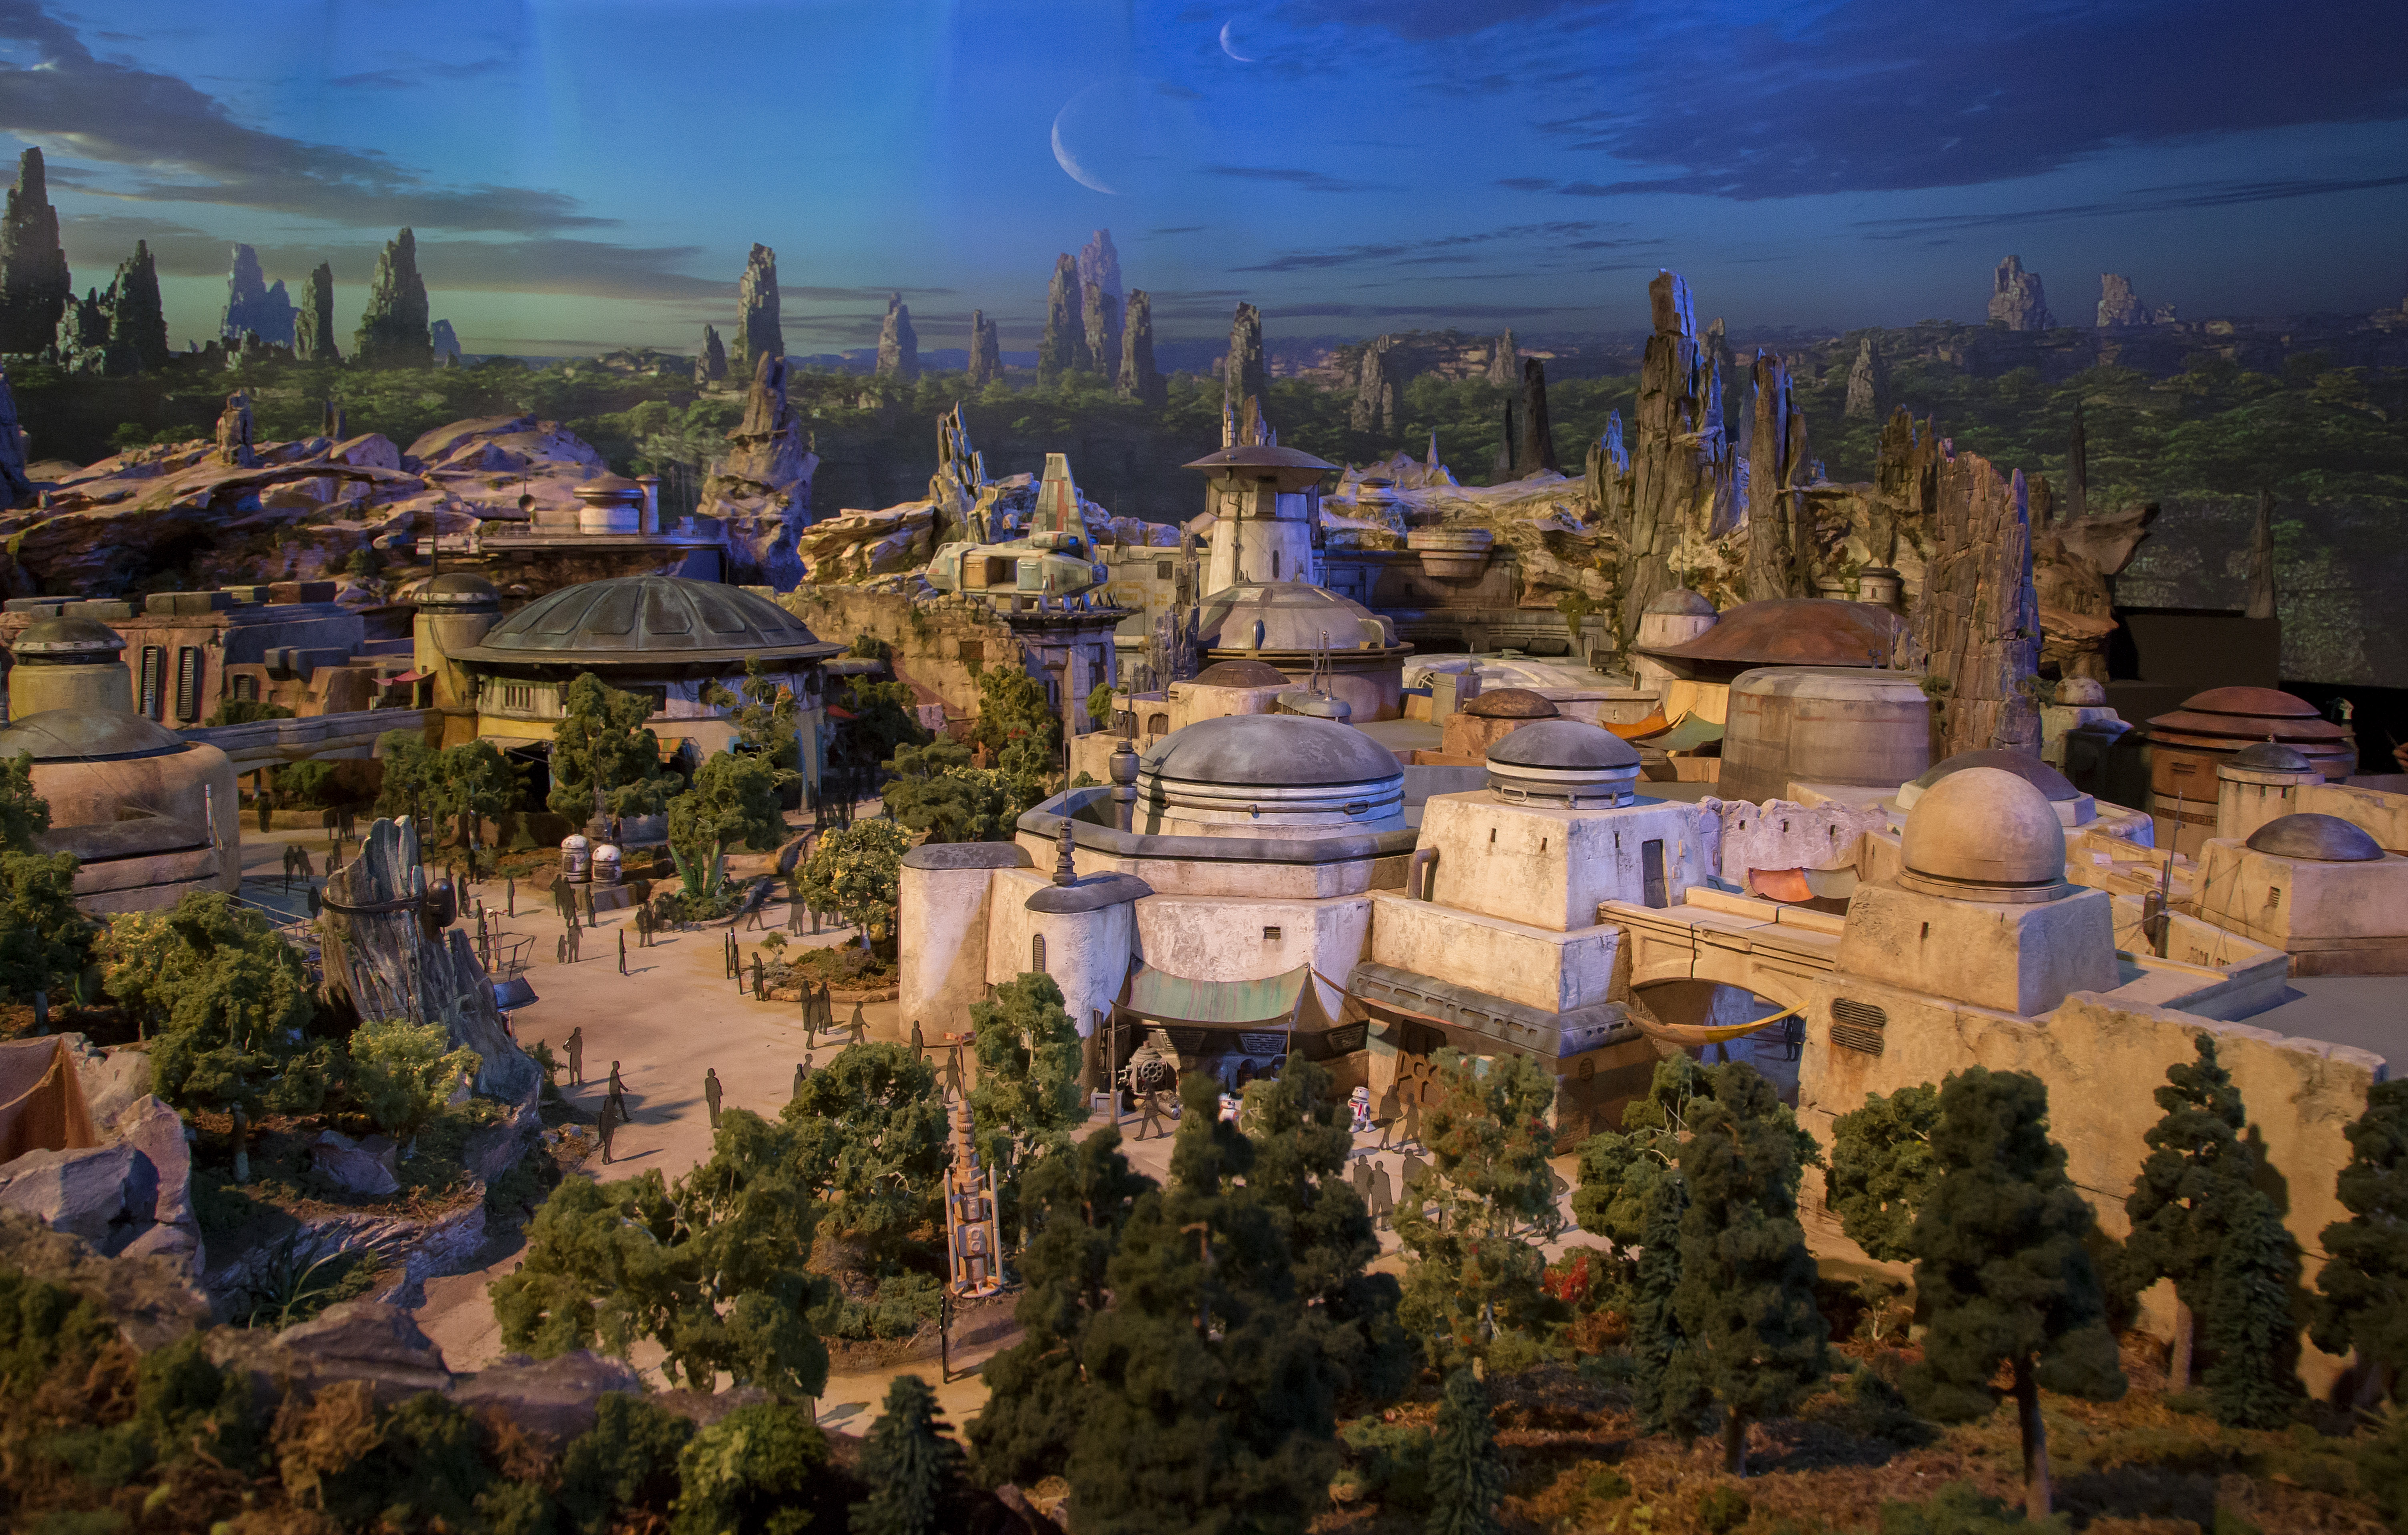 Star Wars Land Planning Disneyland|Star Wars Land Planning Disney World